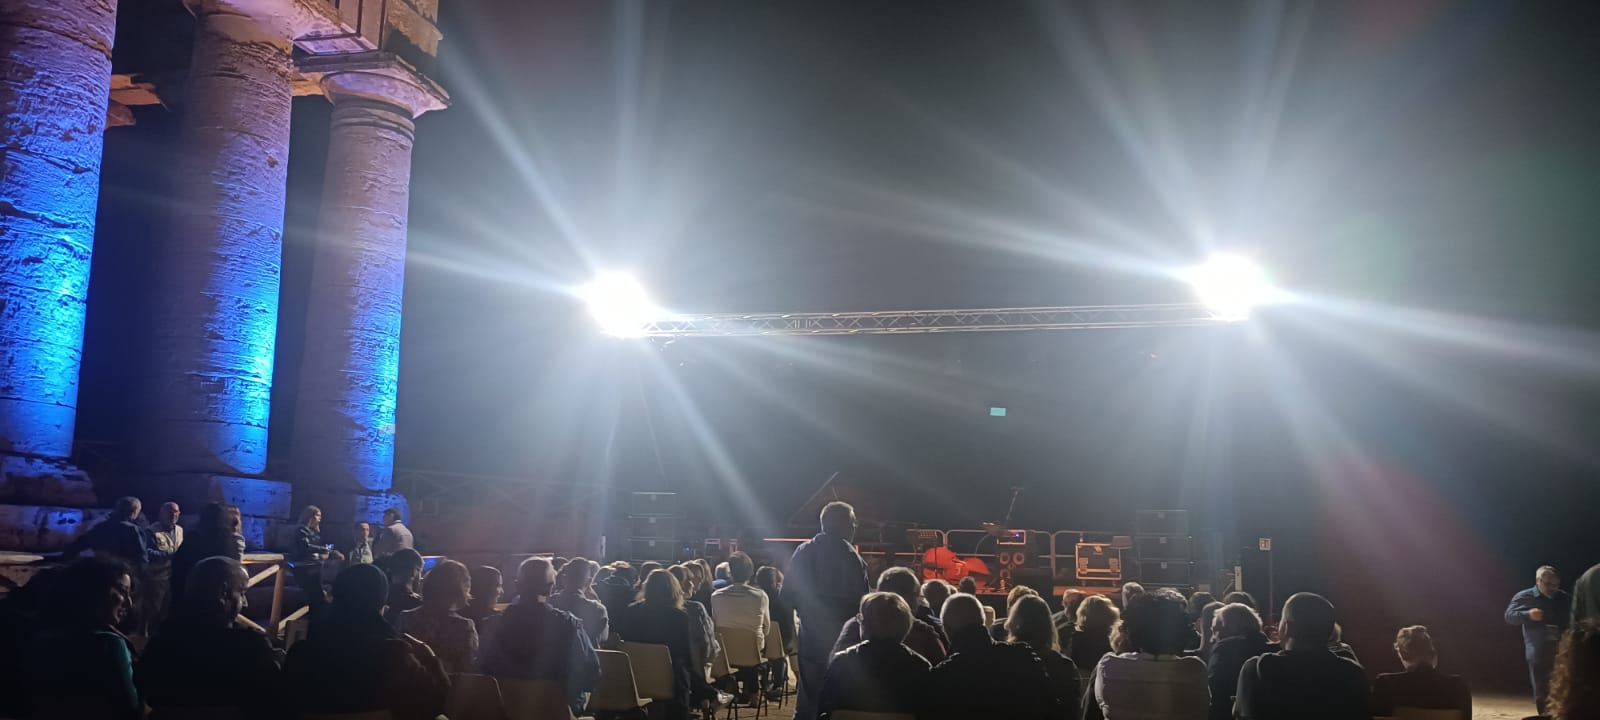 Festival Ierofanie, gran finale martedì 24 ottobre al Tempio di Segesta con la musica internazionale di Elina Duni & Rob Luft Duo